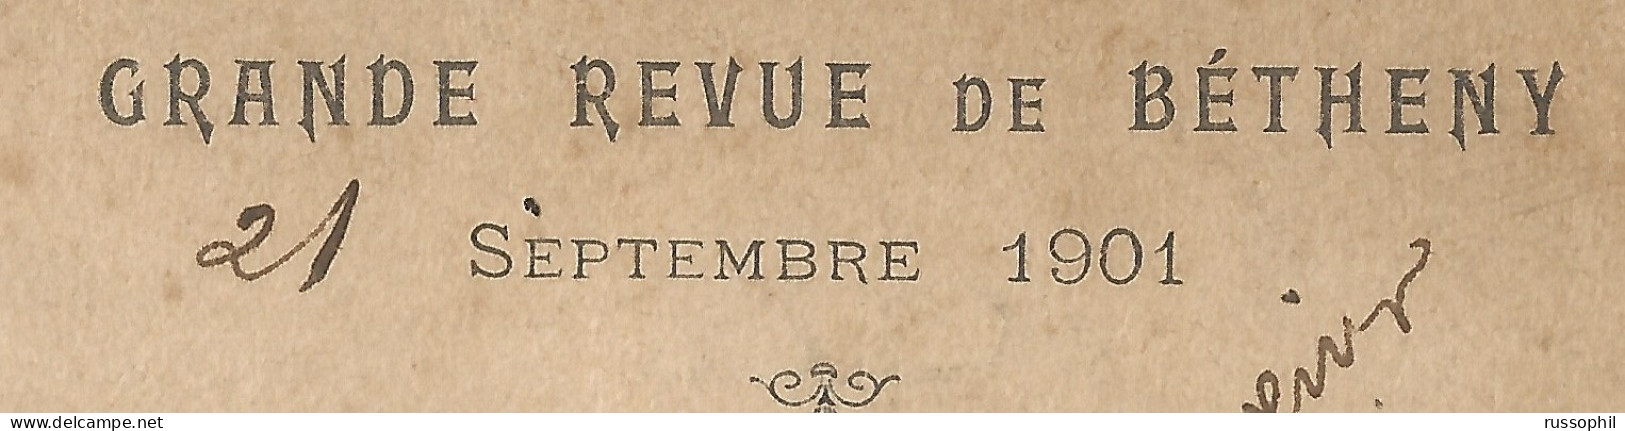 FRANCO RUSSIAN ALLIANCE - GRANDE REVUE DE BETHENY - 21 SEPTEMBRE 1901 - VUE DE BETHENY, PRES REIMS - 1901 - Ereignisse